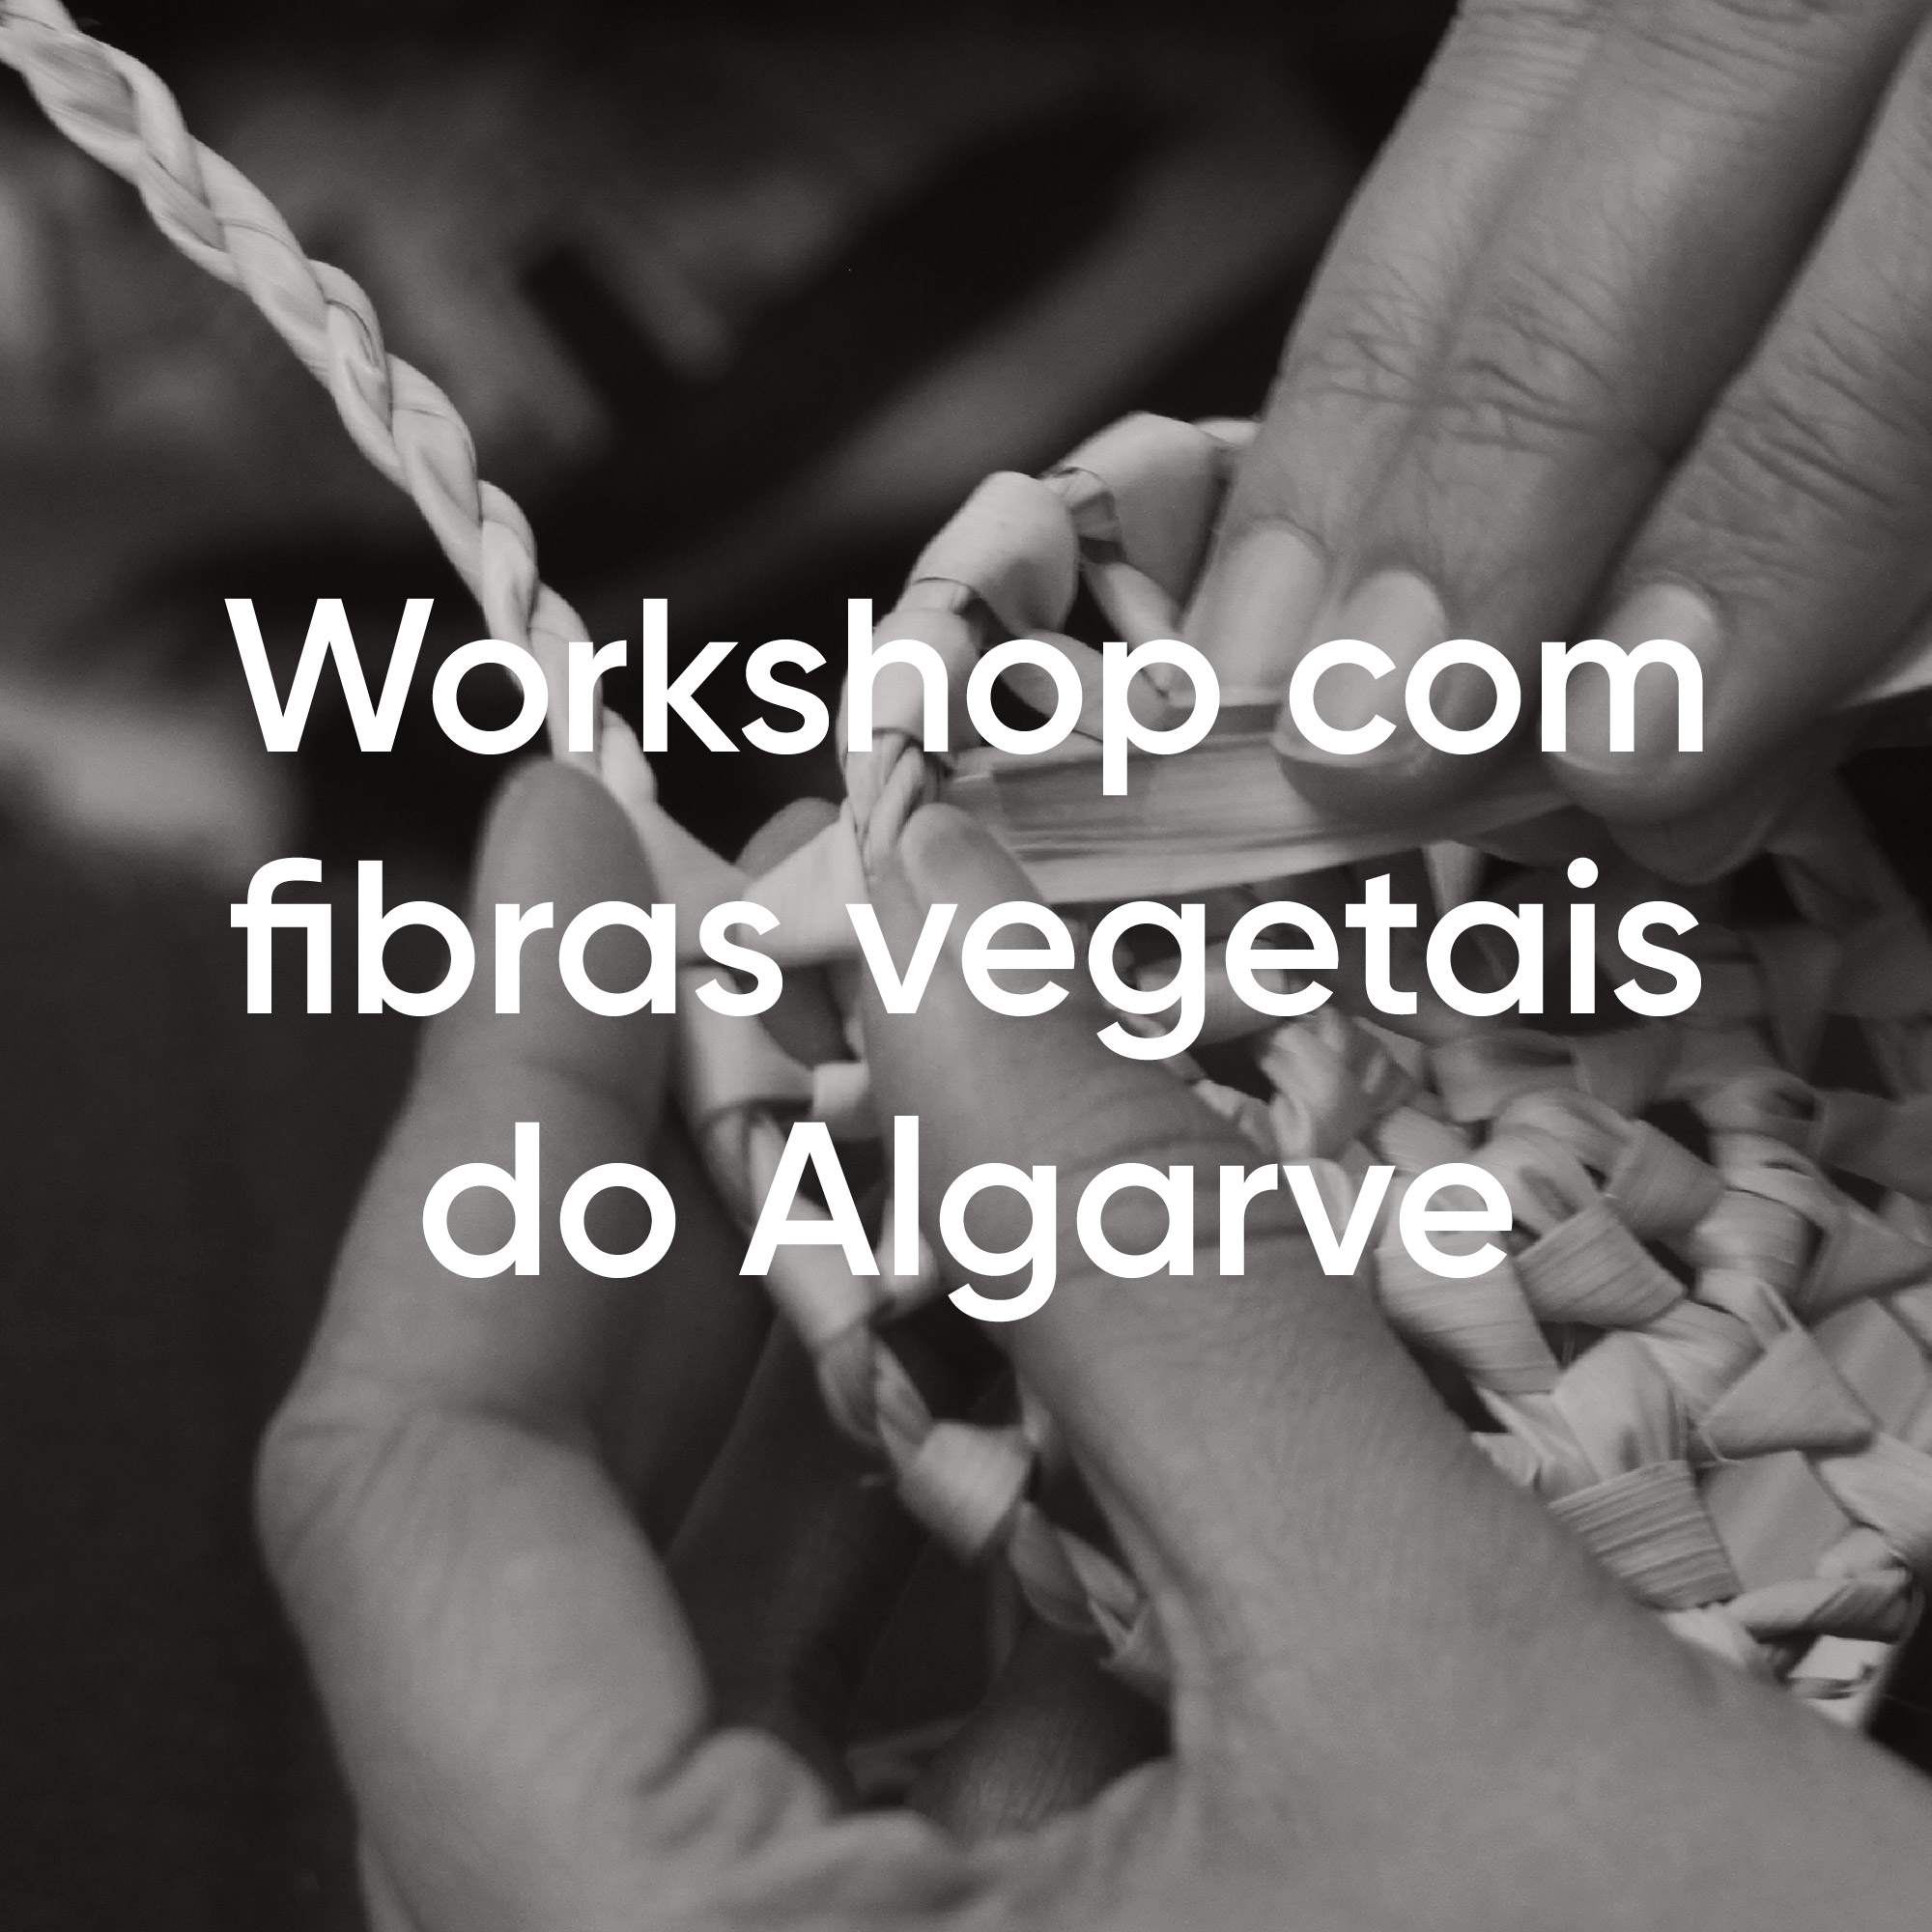 Experience_Fibras vegetais do Algarve_1080x1080-01-01